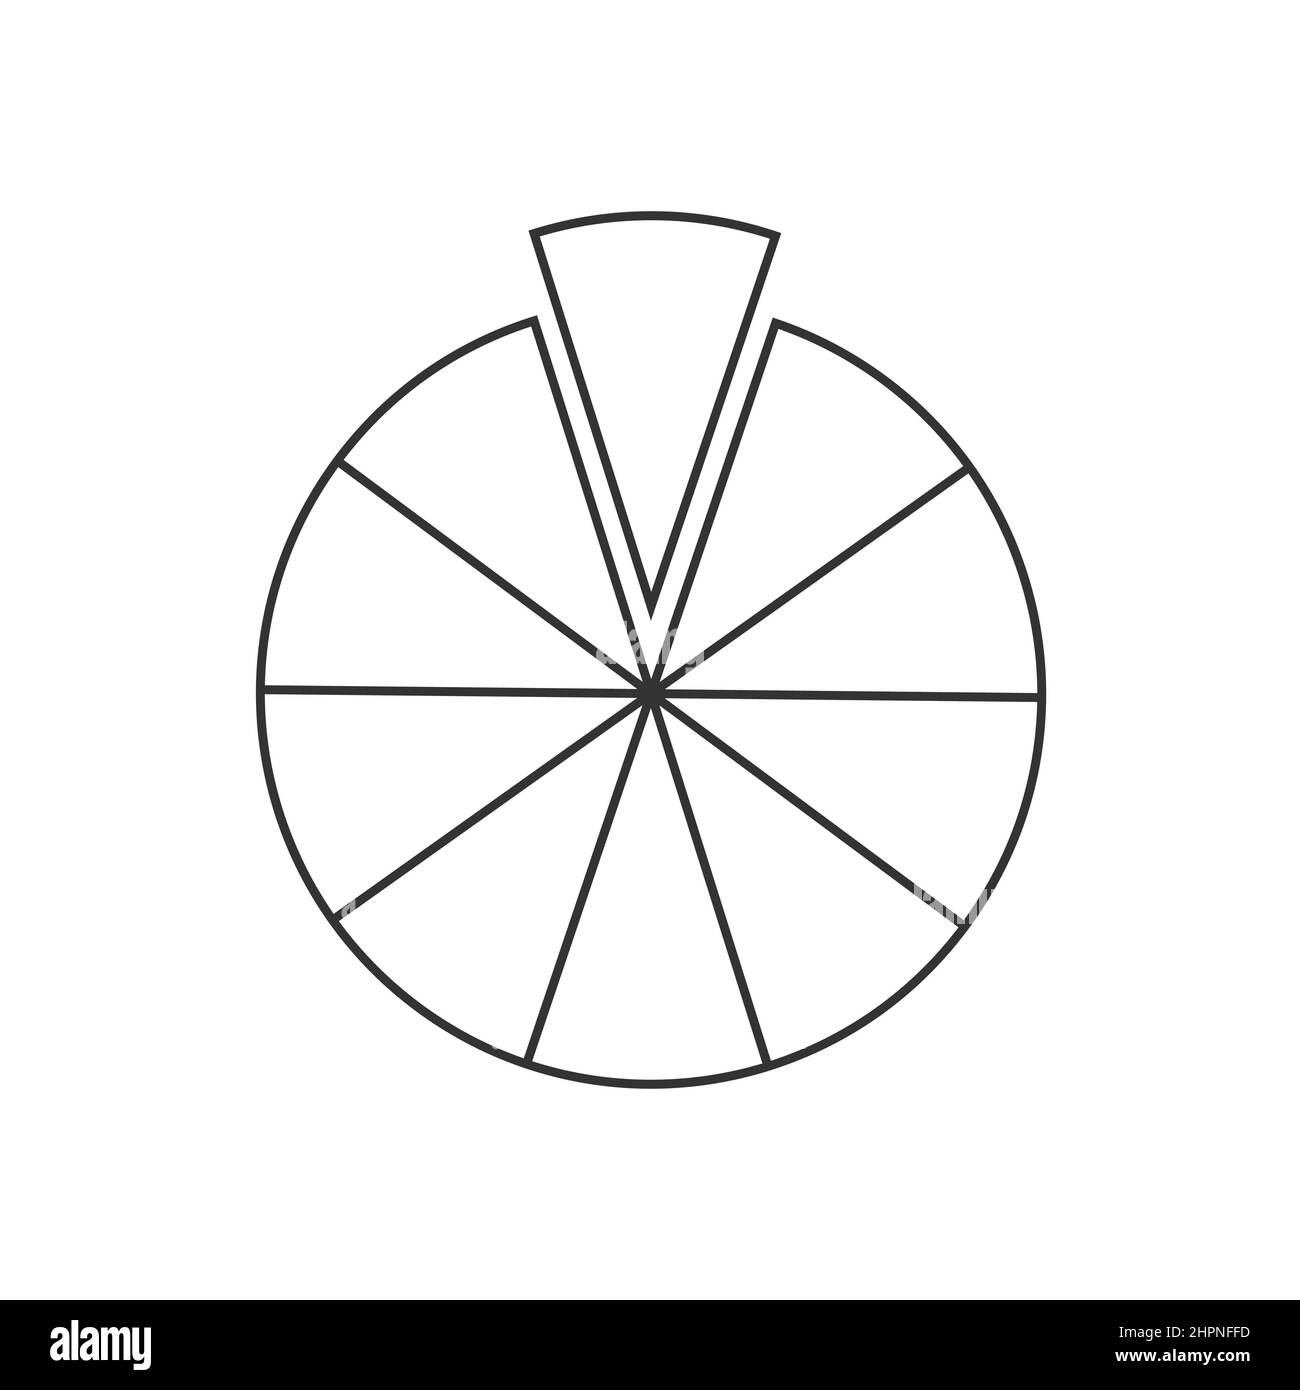 Cerchio segmentato in 10 settori. Forma a torta o pizza tagliata in dieci fette uguali. Esempio di grafico statistico rotondo isolato su sfondo bianco. Illustrazione del contorno vettoriale Illustrazione Vettoriale